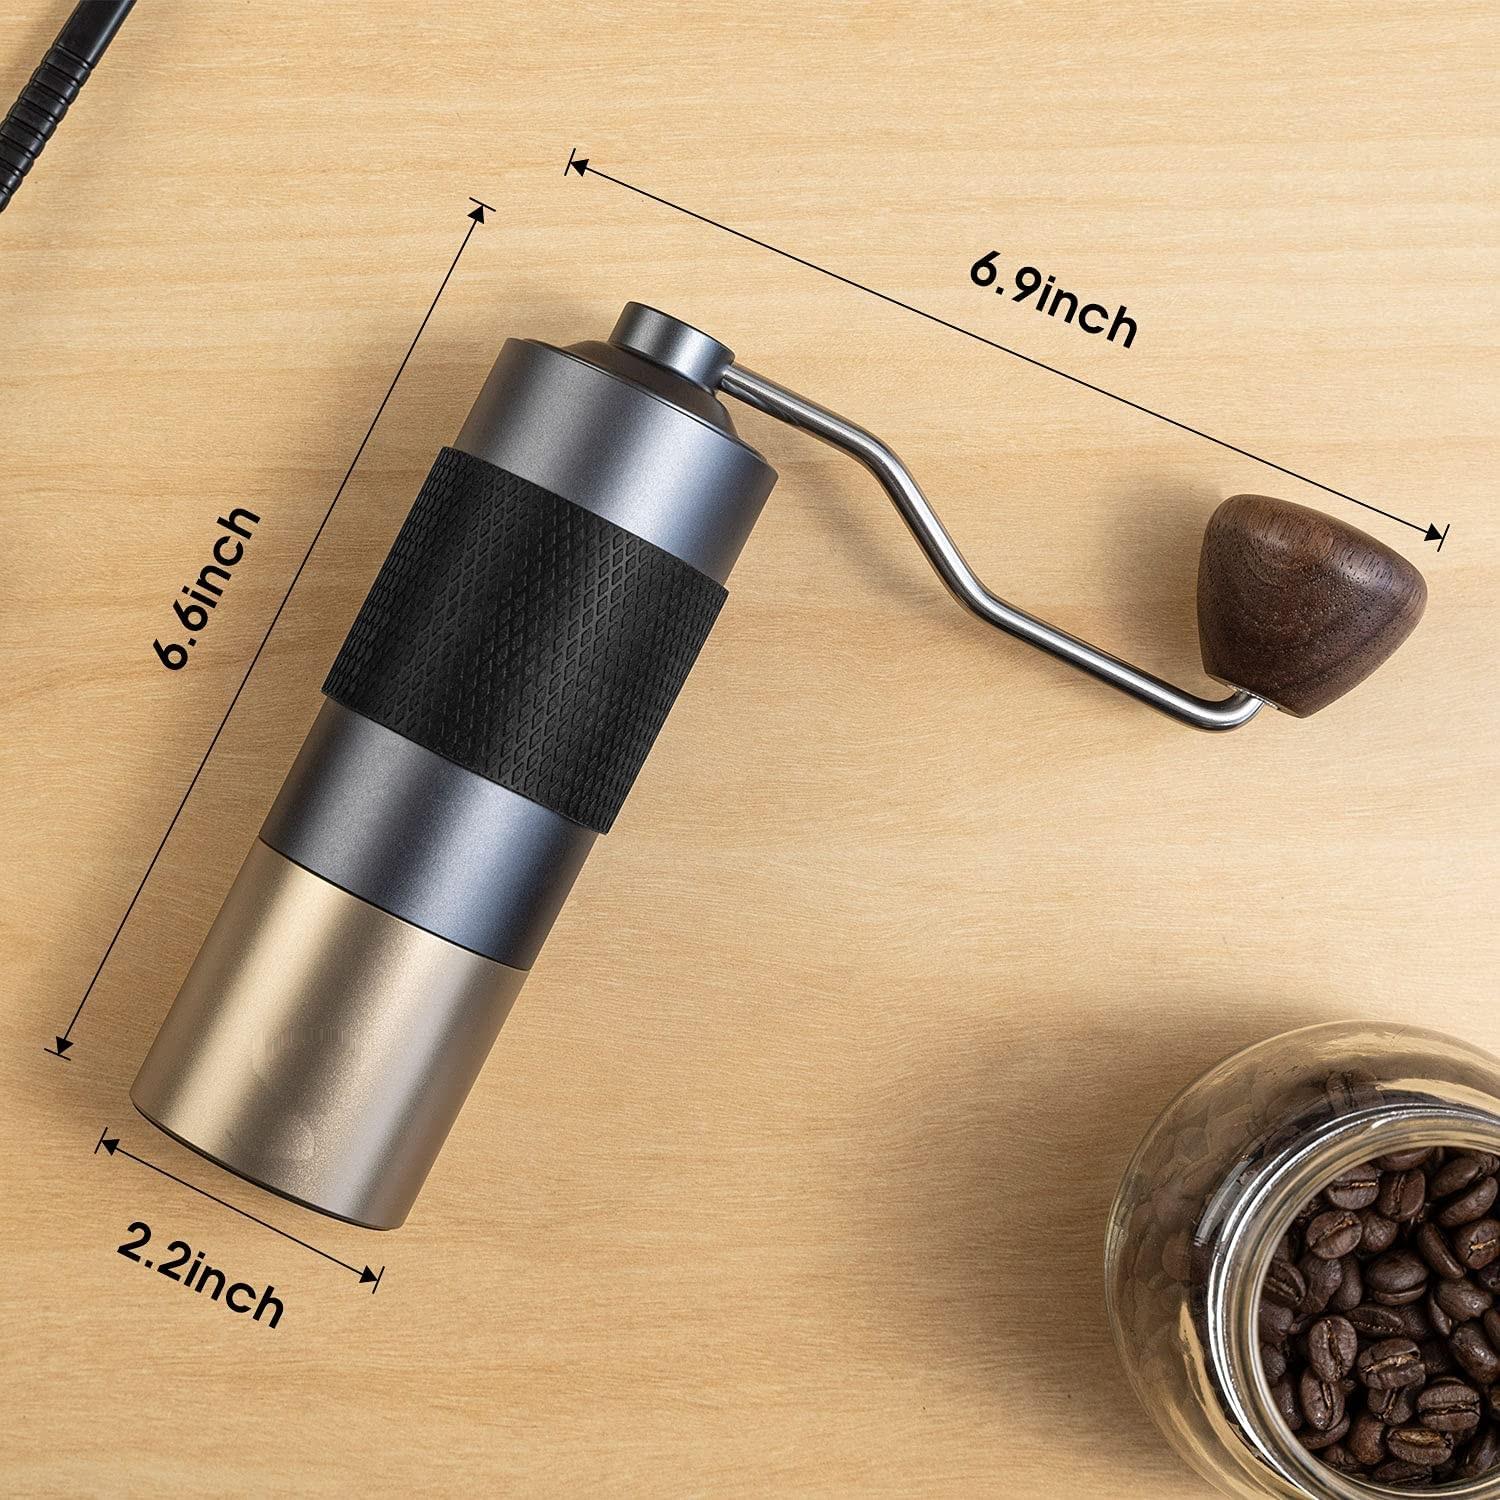 최고의 핸드 커피 그라인더 조정 가능한 스테인레스 스틸 휴대용 수동 커피 그라인더 커피 콩 그라인더